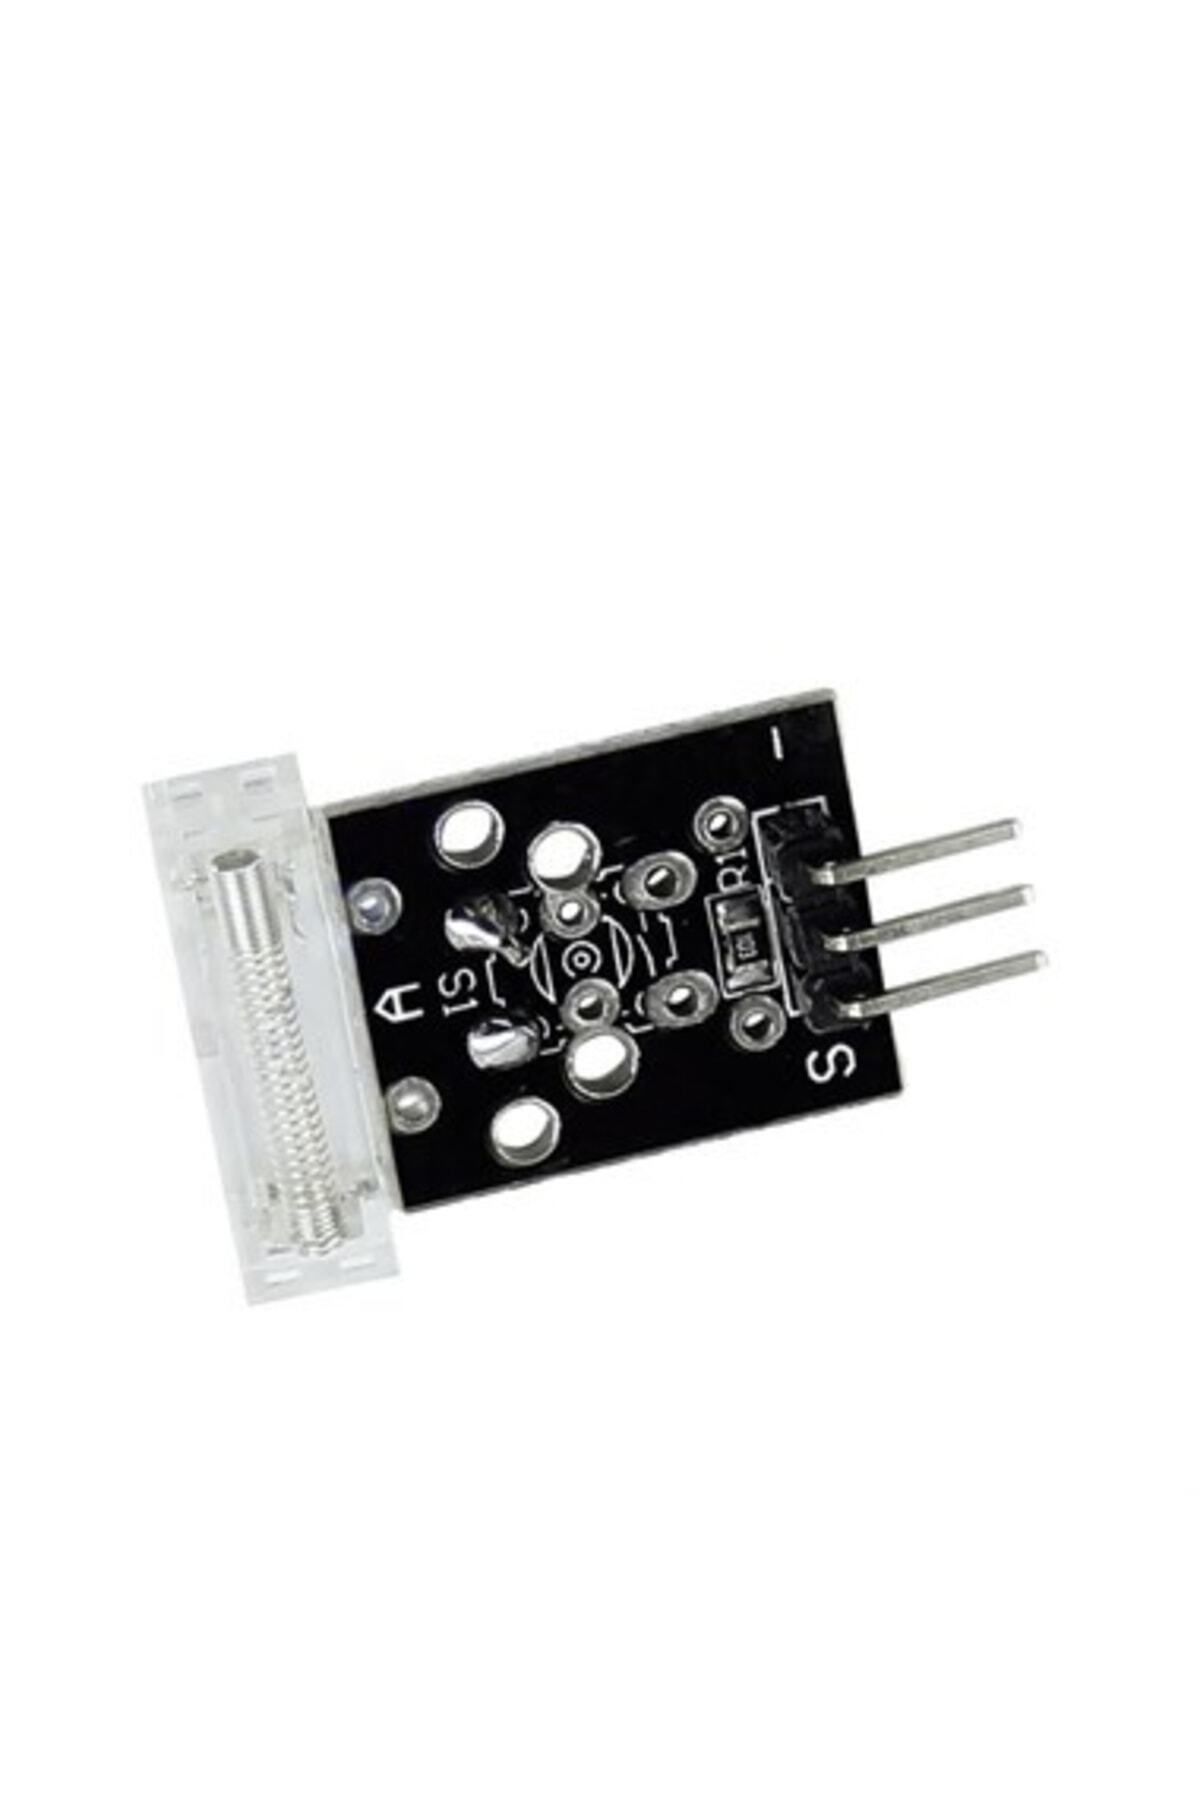 Robocombo Arduino Için Knock Sensör Modülü Ky-031